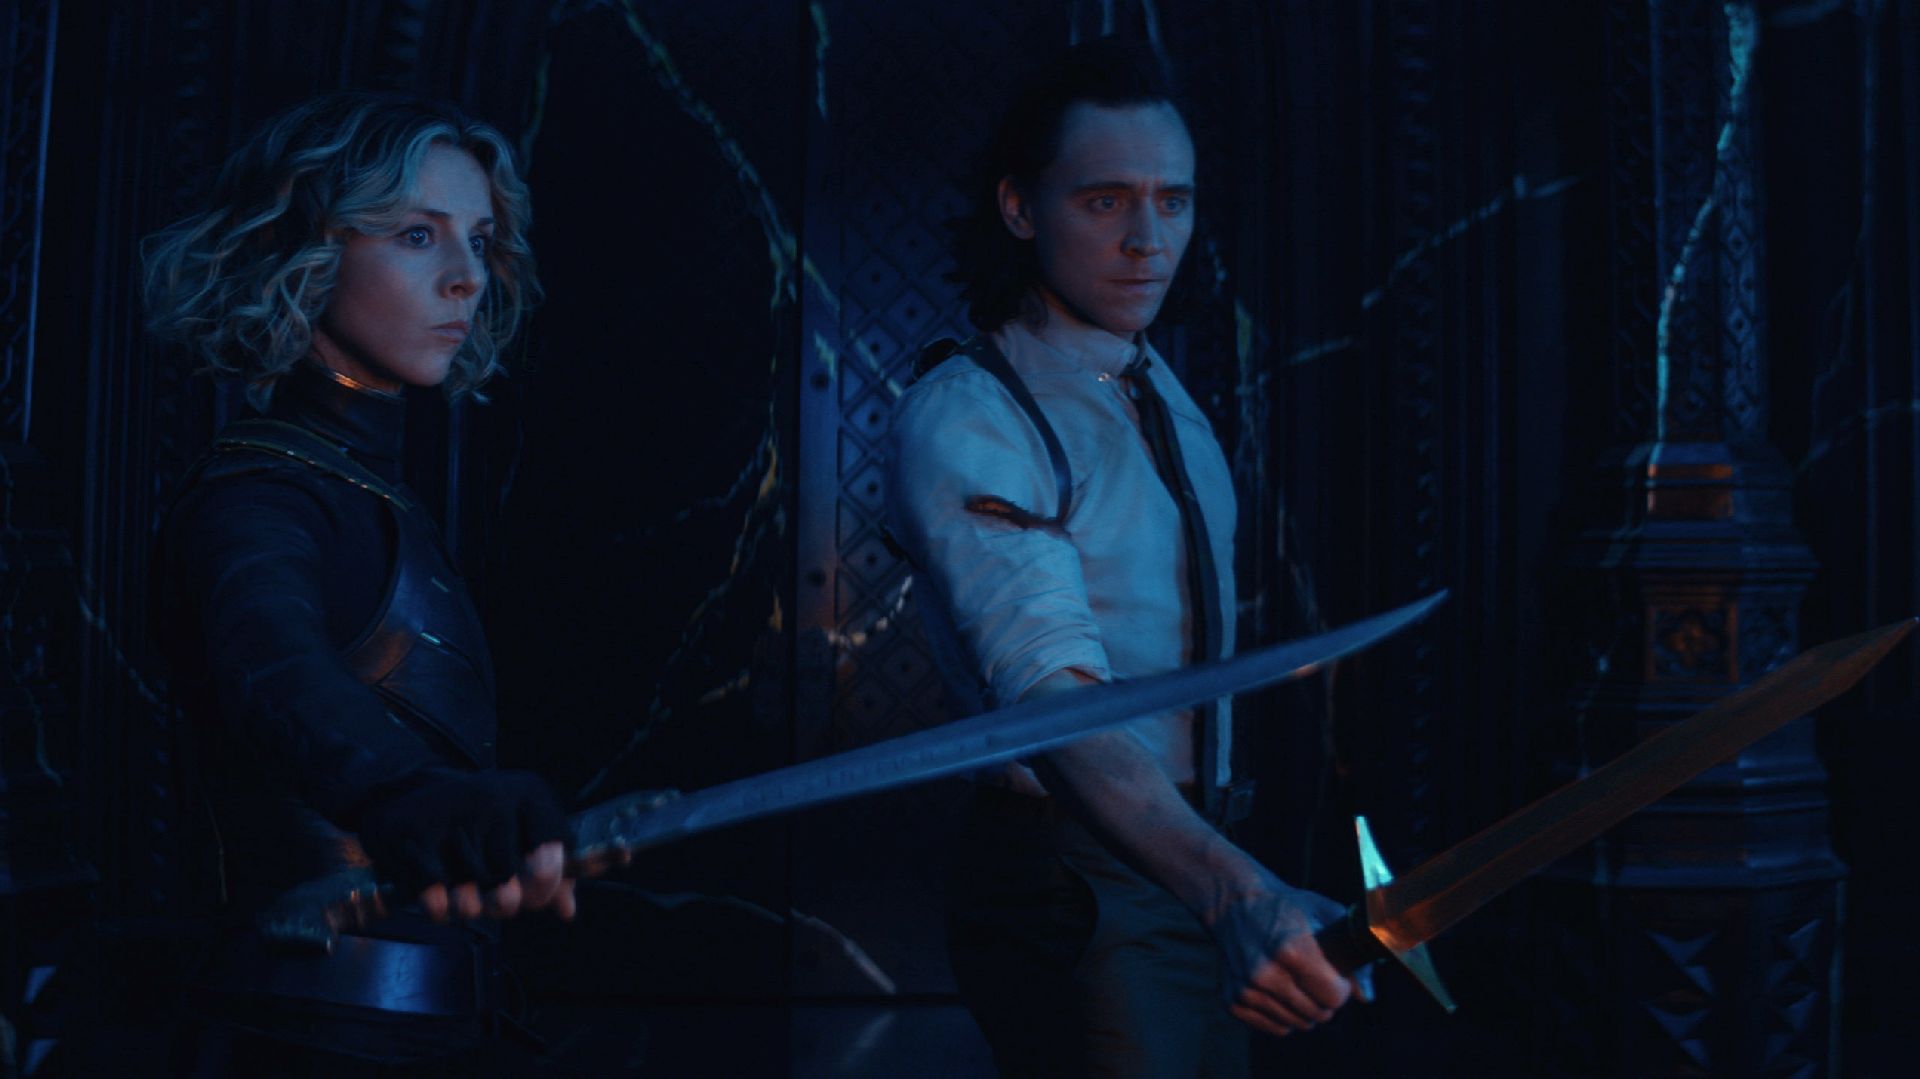 Sylvie y Loki provocaron un caos en el universo en la temporada anterior. (Disney+)